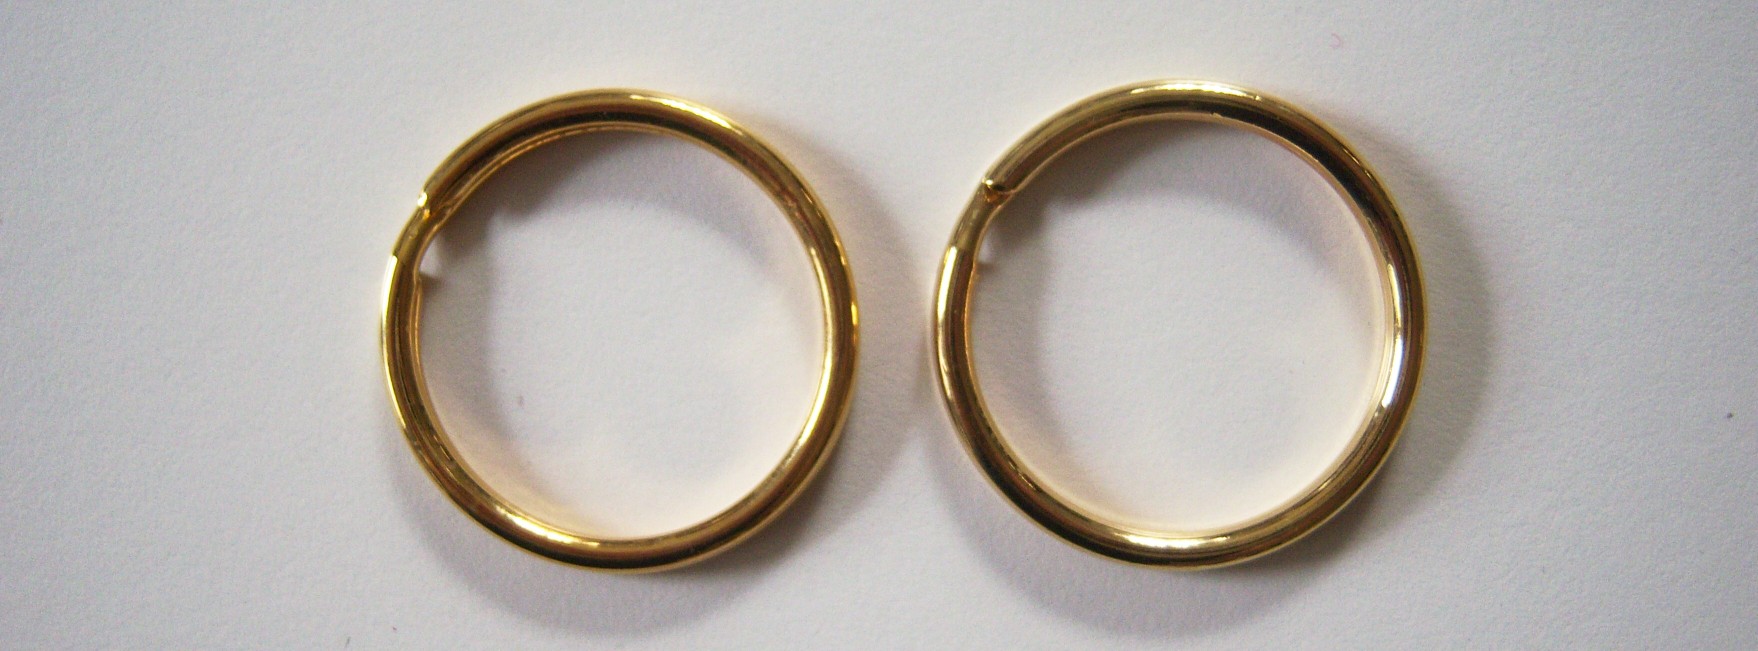 Gold Metal 1 1/4" Key Ring